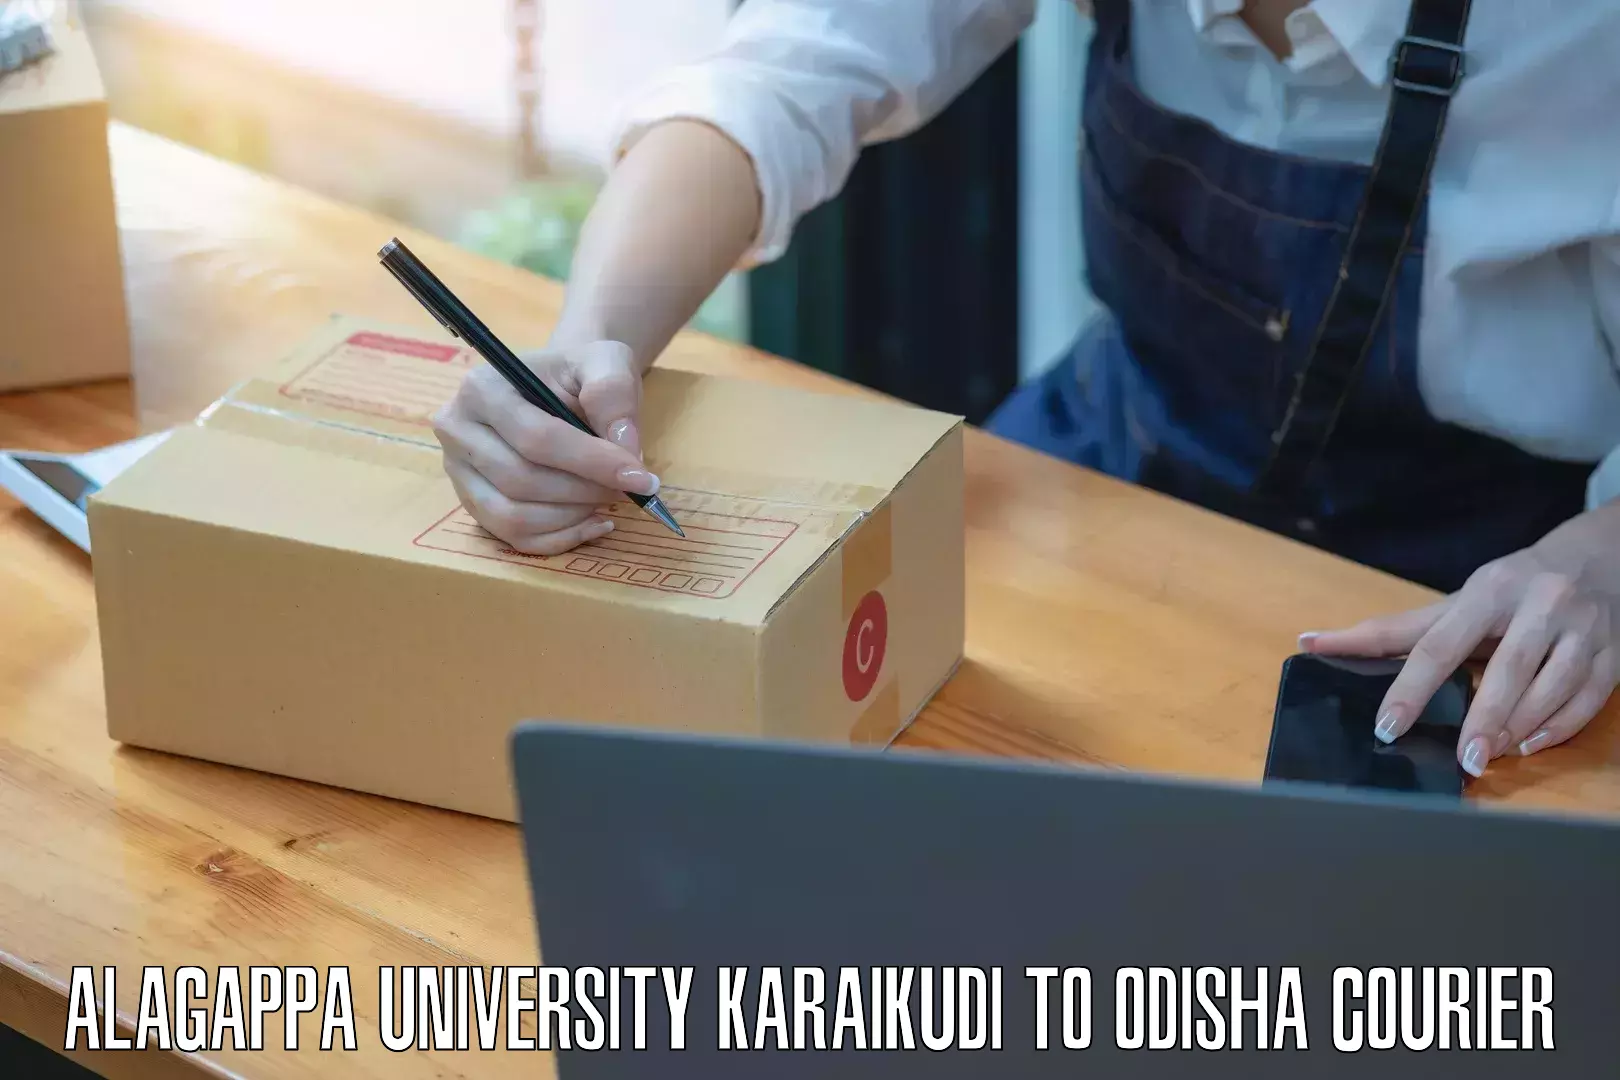 Professional parcel services Alagappa University Karaikudi to Balikuda